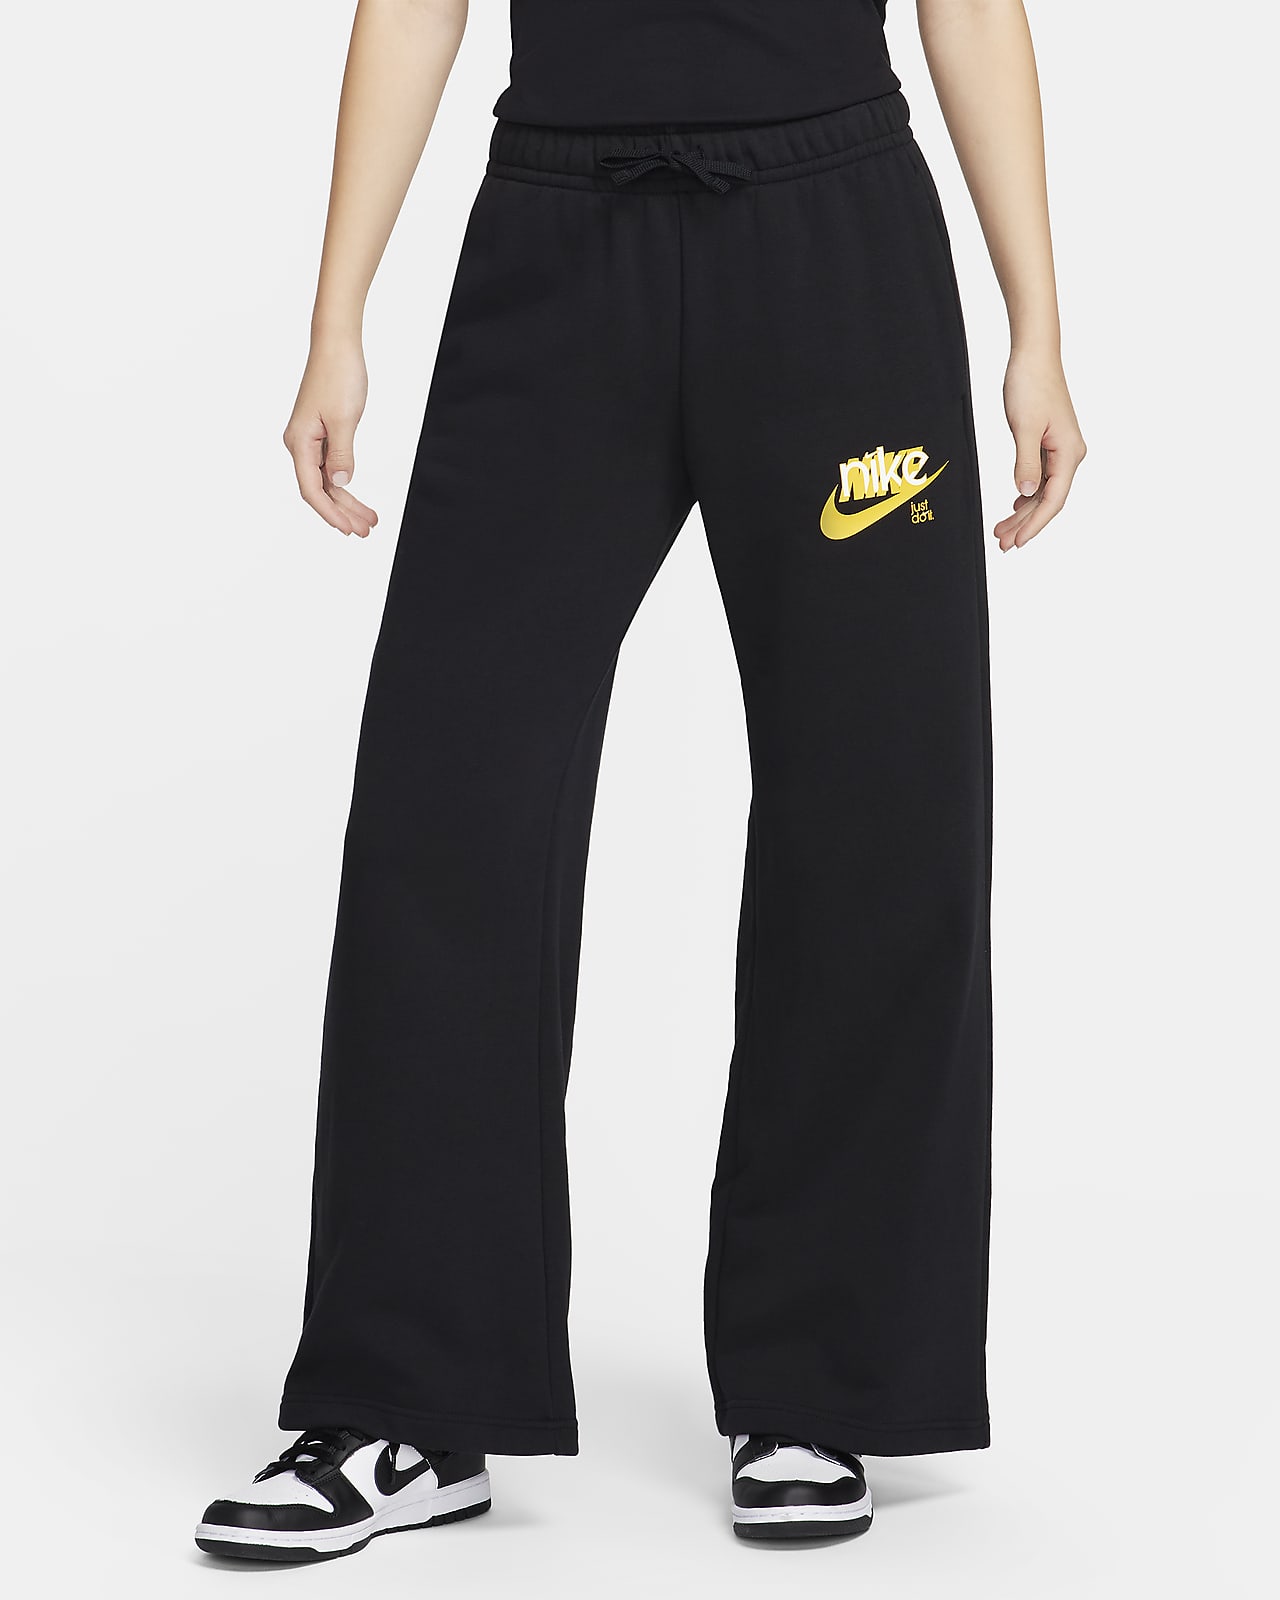 กางเกงขายาวผ้าเฟรนช์เทรีทรงขากว้างเอวปานกลางมีกราฟิกผู้หญิง Nike Sportswear Club Fleece